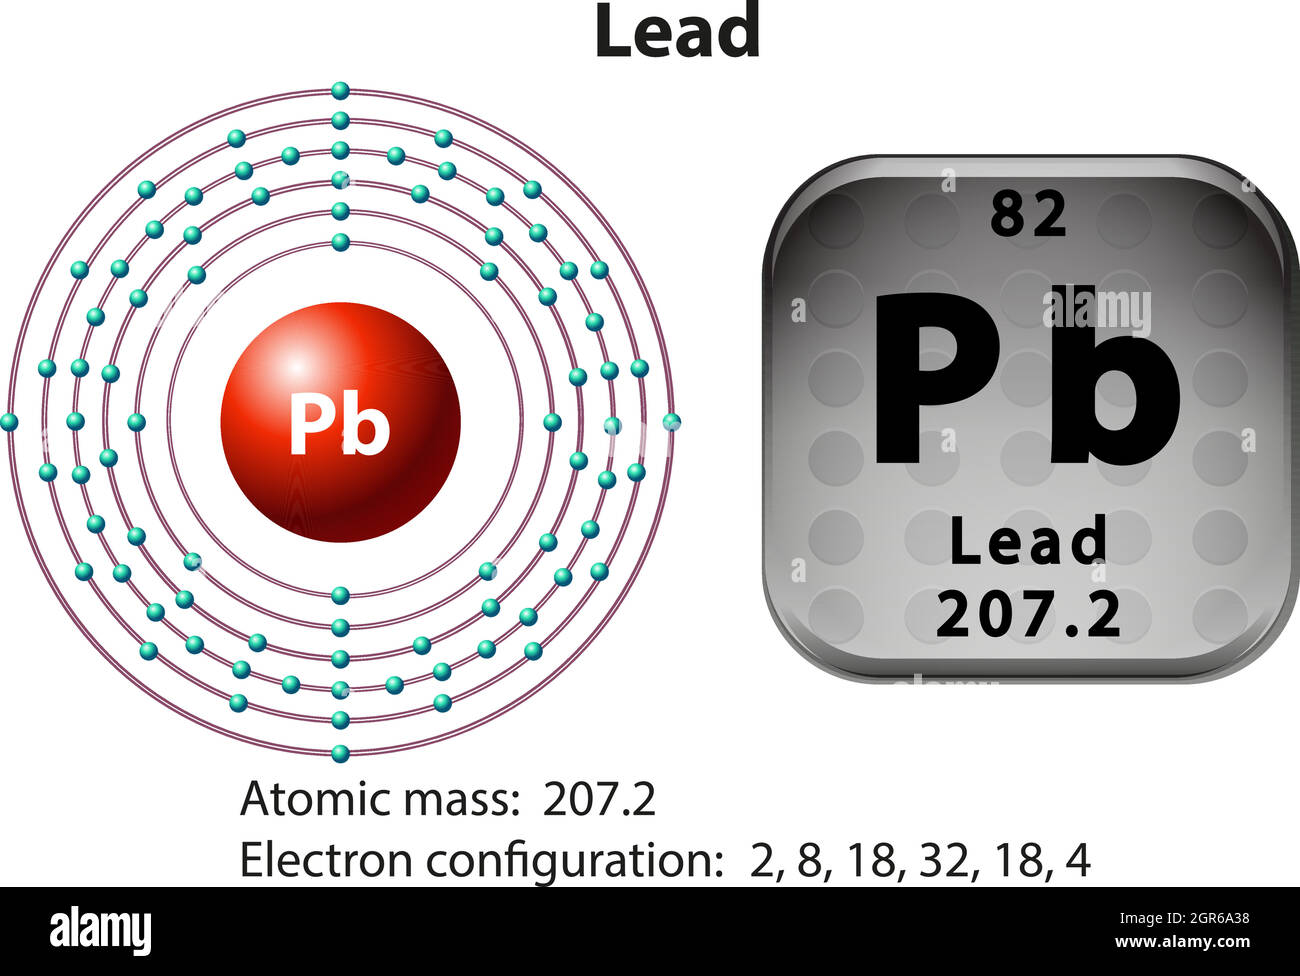 Изотопы pb. Лантан строение атома. Строение атома свинец PB. Лантан строение атома и электронная формула. Электронное строение атома PB свинца.